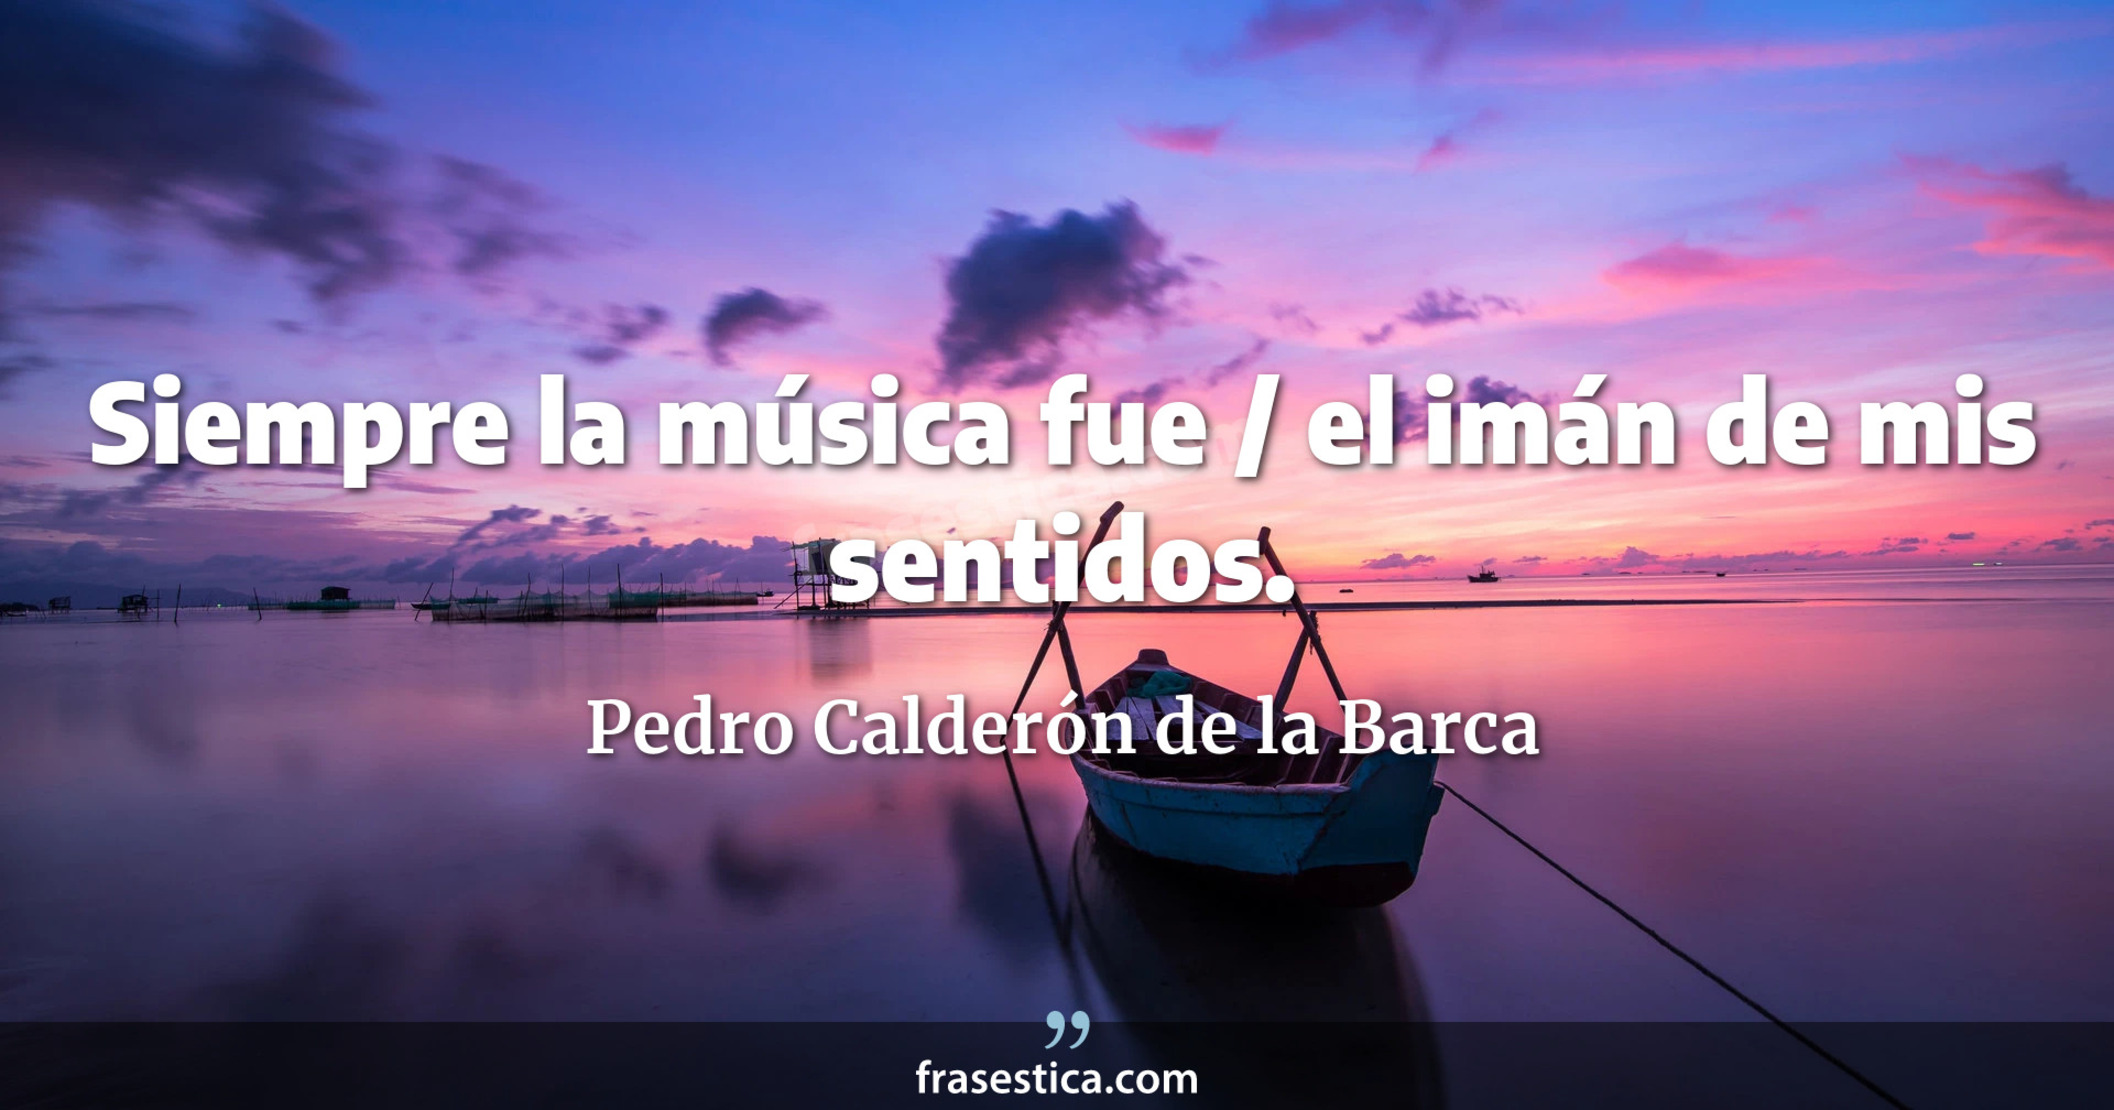 Siempre la música fue / el imán de mis sentidos. - Pedro Calderón de la Barca